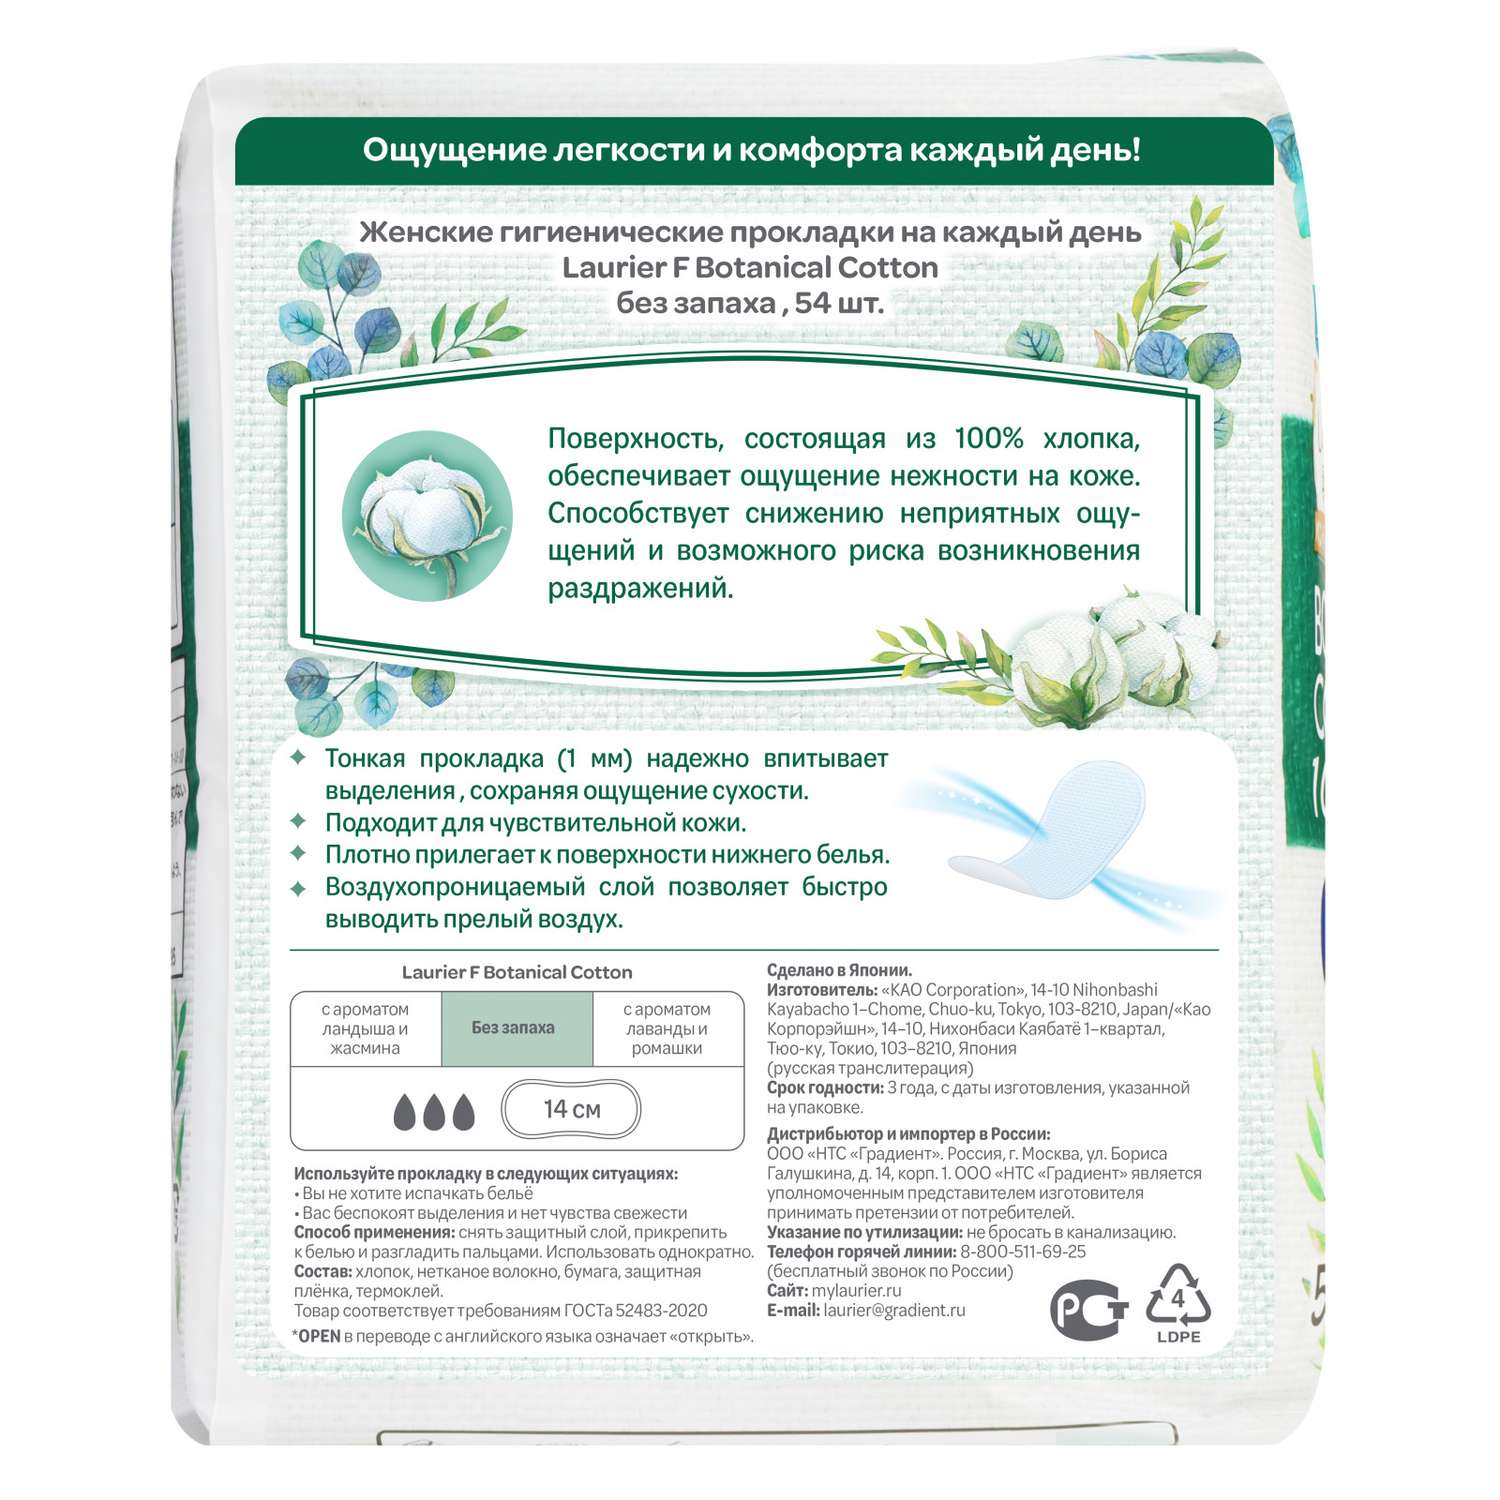 Прокладки гигиенические Laurier F Botanical Cotton на каждый день без запаха 54шт - фото 2